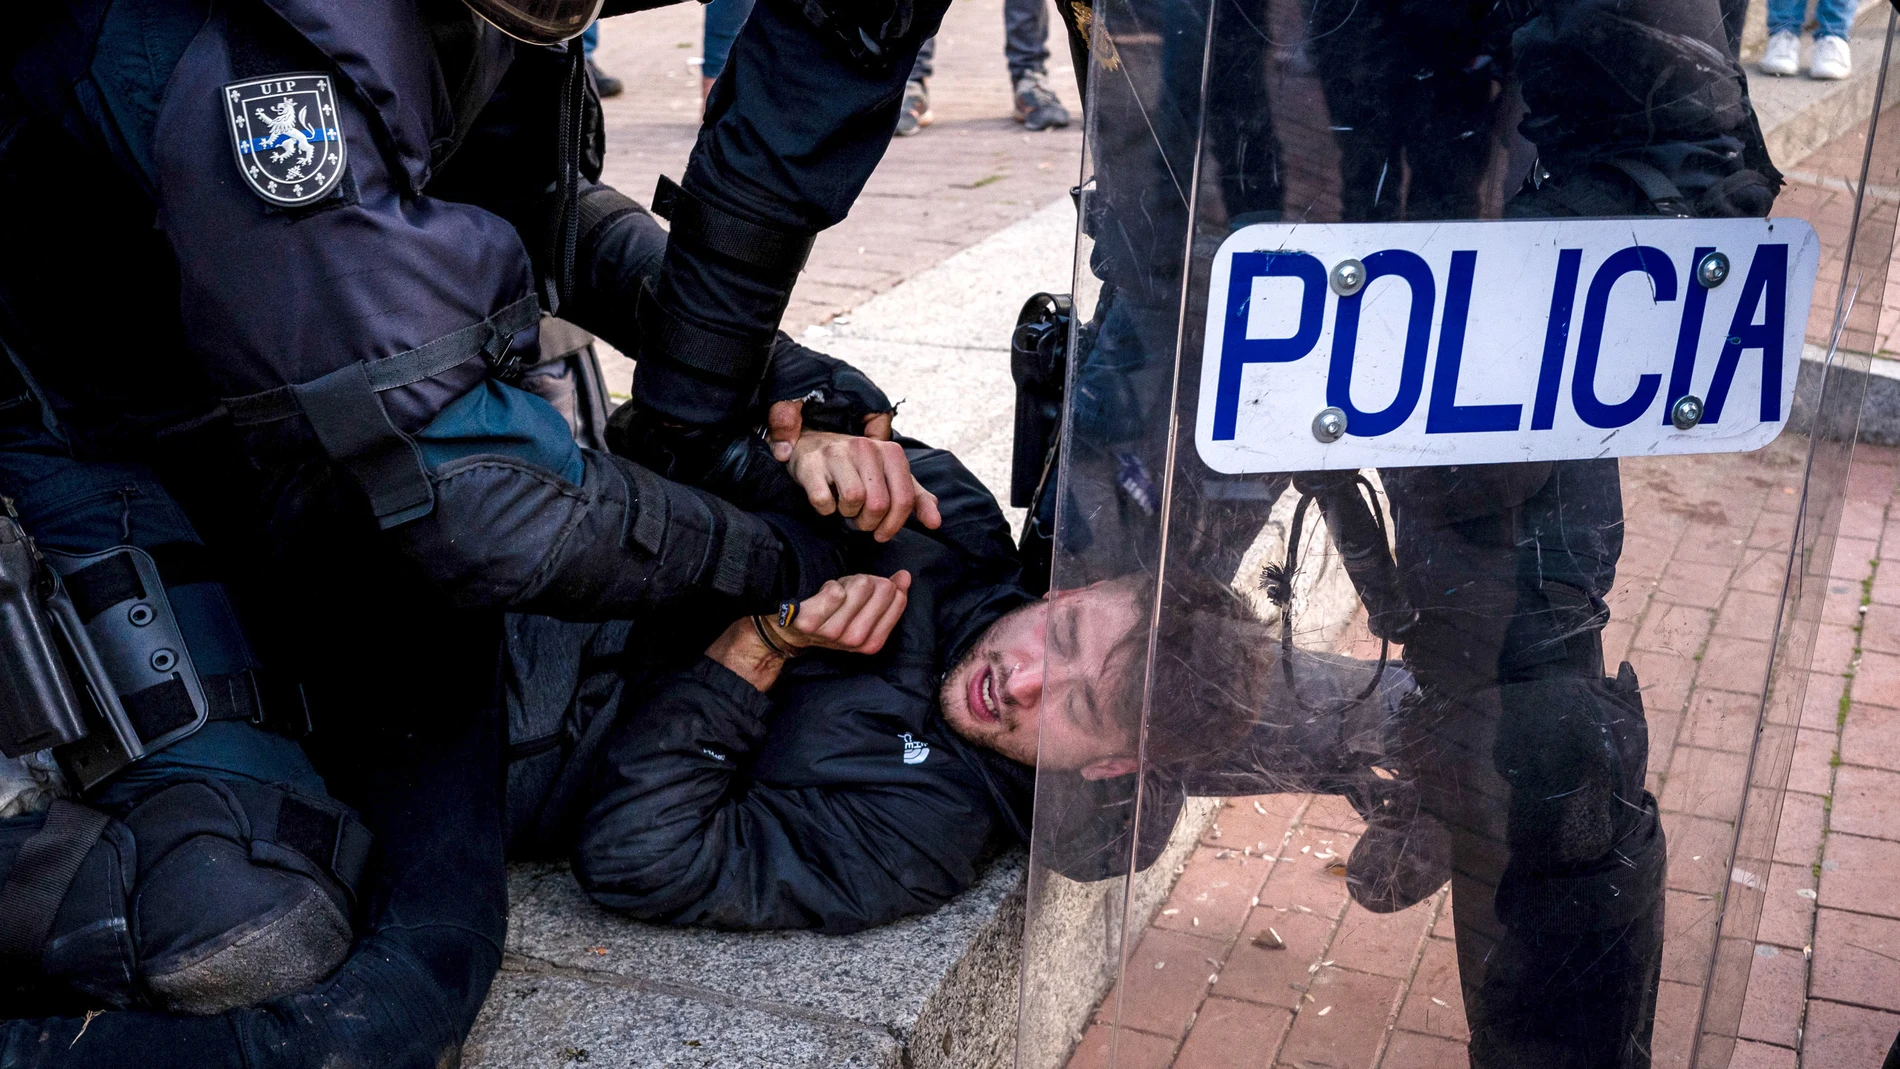 Un momento de los disturbios registrados ayer en Vallecass, en los que resultaron heridos y contusionados una veintena de agentes de Policía Diego Radames/SOPA Images via ZU / DPA07/04/2021 ONLY FOR USE IN SPAIN